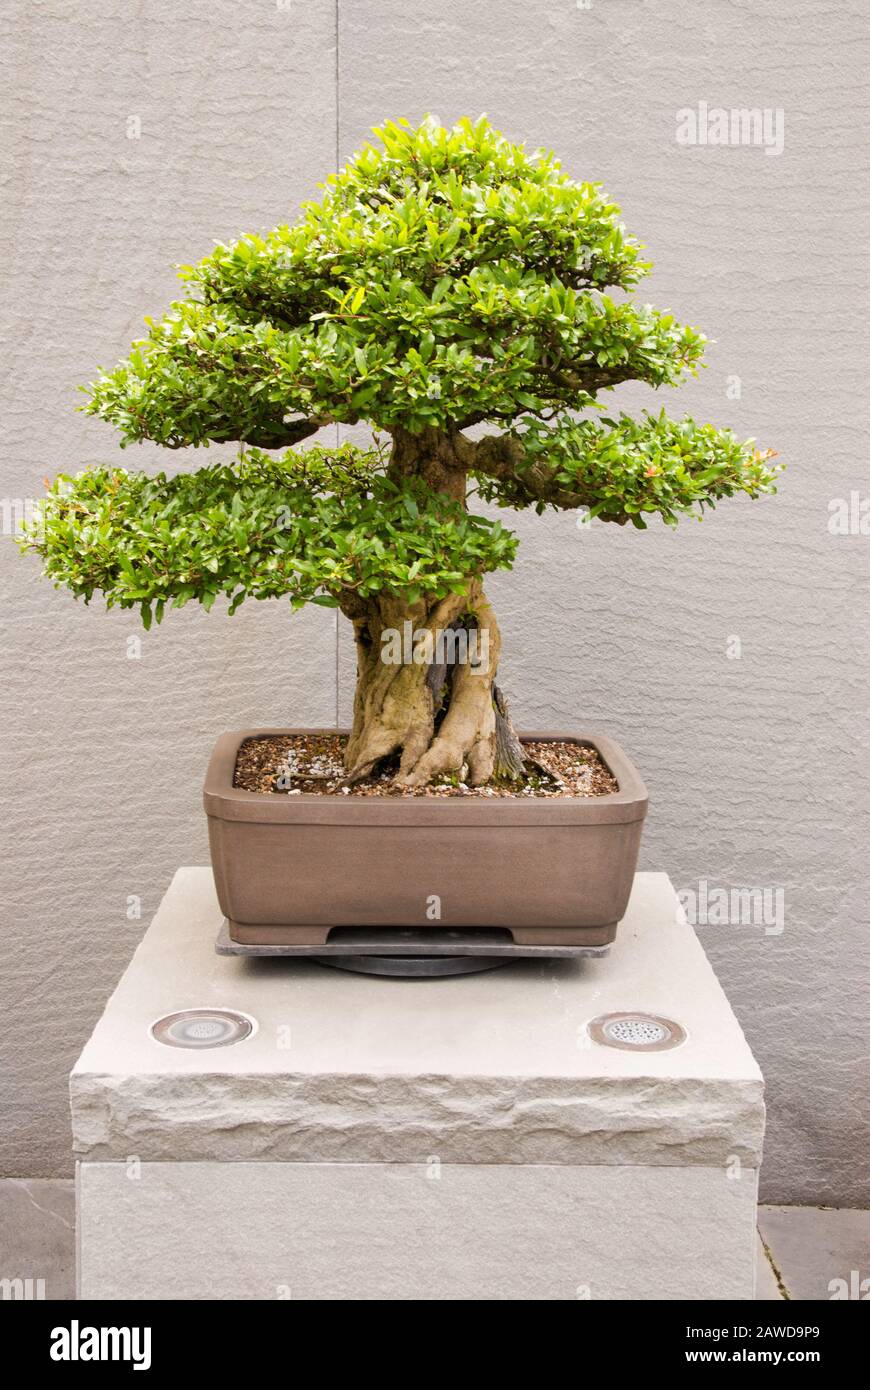 Un arbre Punica granatum Pomegranate bonsai qui pousse dans un récipient en pot. Cet arbre est en formation depuis 1963. Banque D'Images